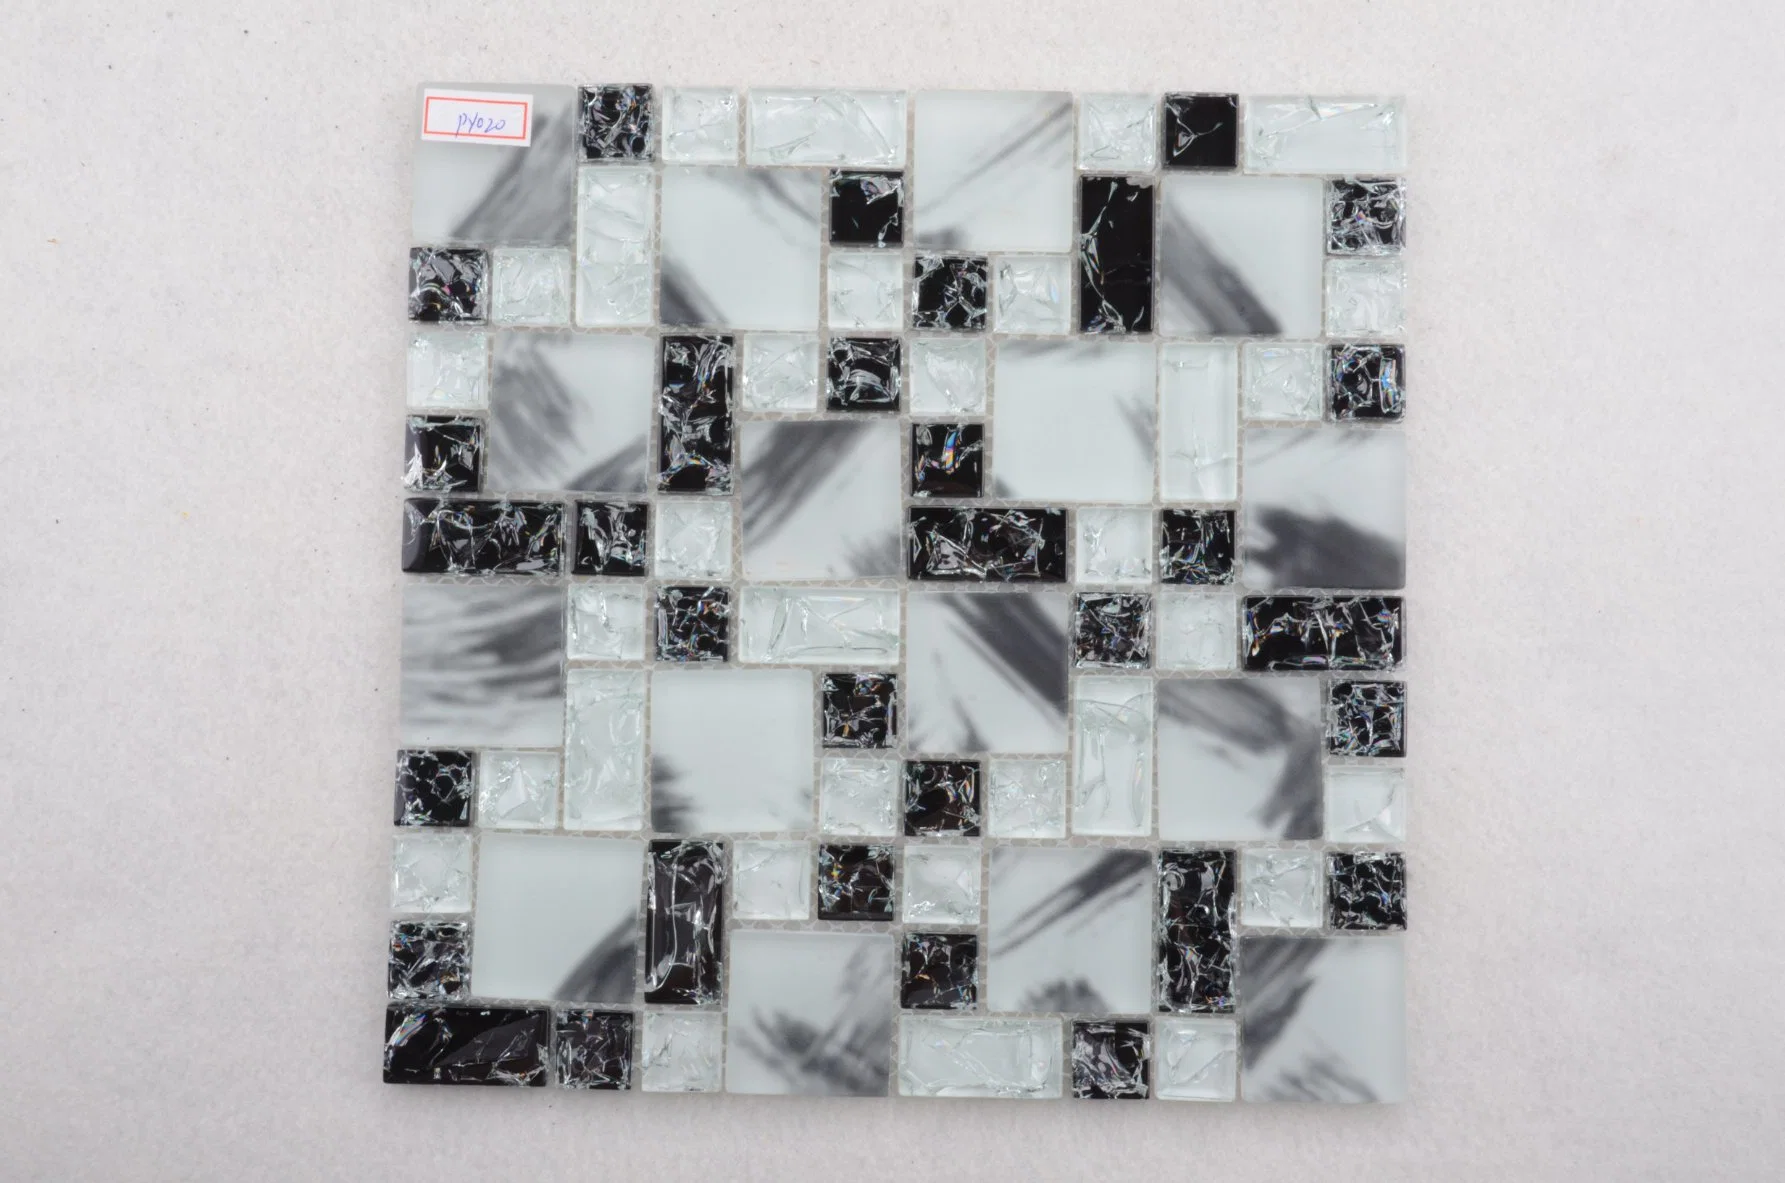 Fábrica de Foshan exquisitamente realizados 300X300 Crystal Mosaico hielo